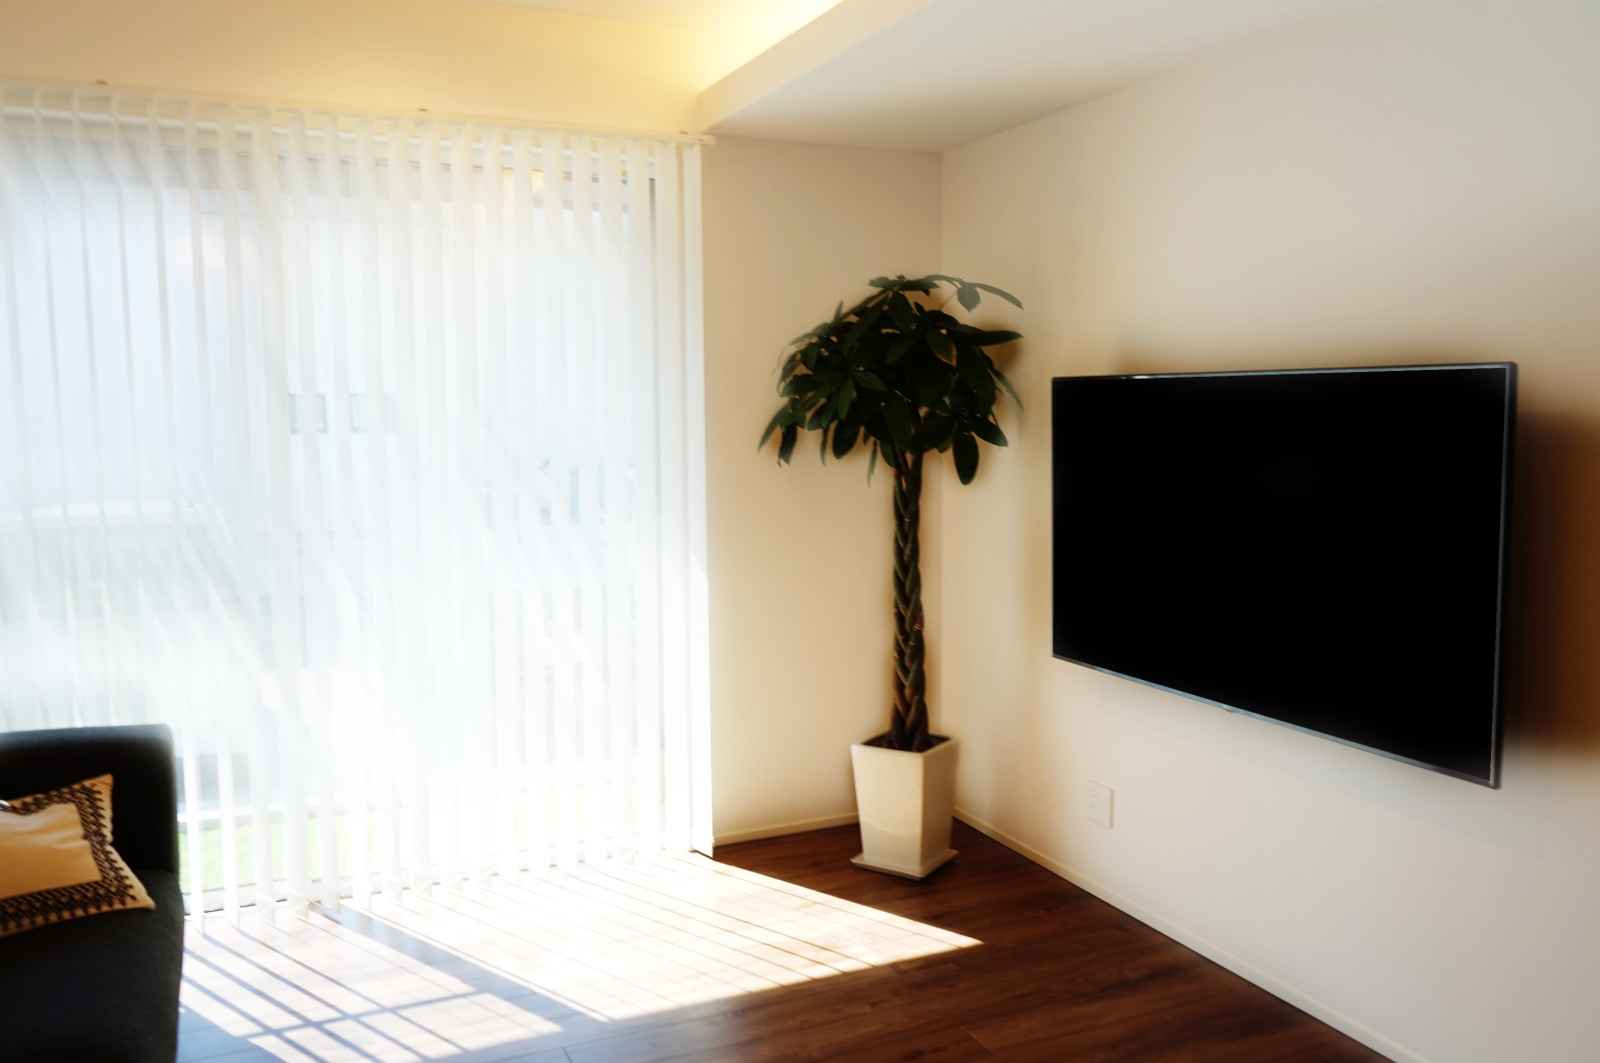 Lgの65インチ液晶テレビ 65uk6500ejd と観葉植物がベストマッチ 壁掛けテレビギャラリー